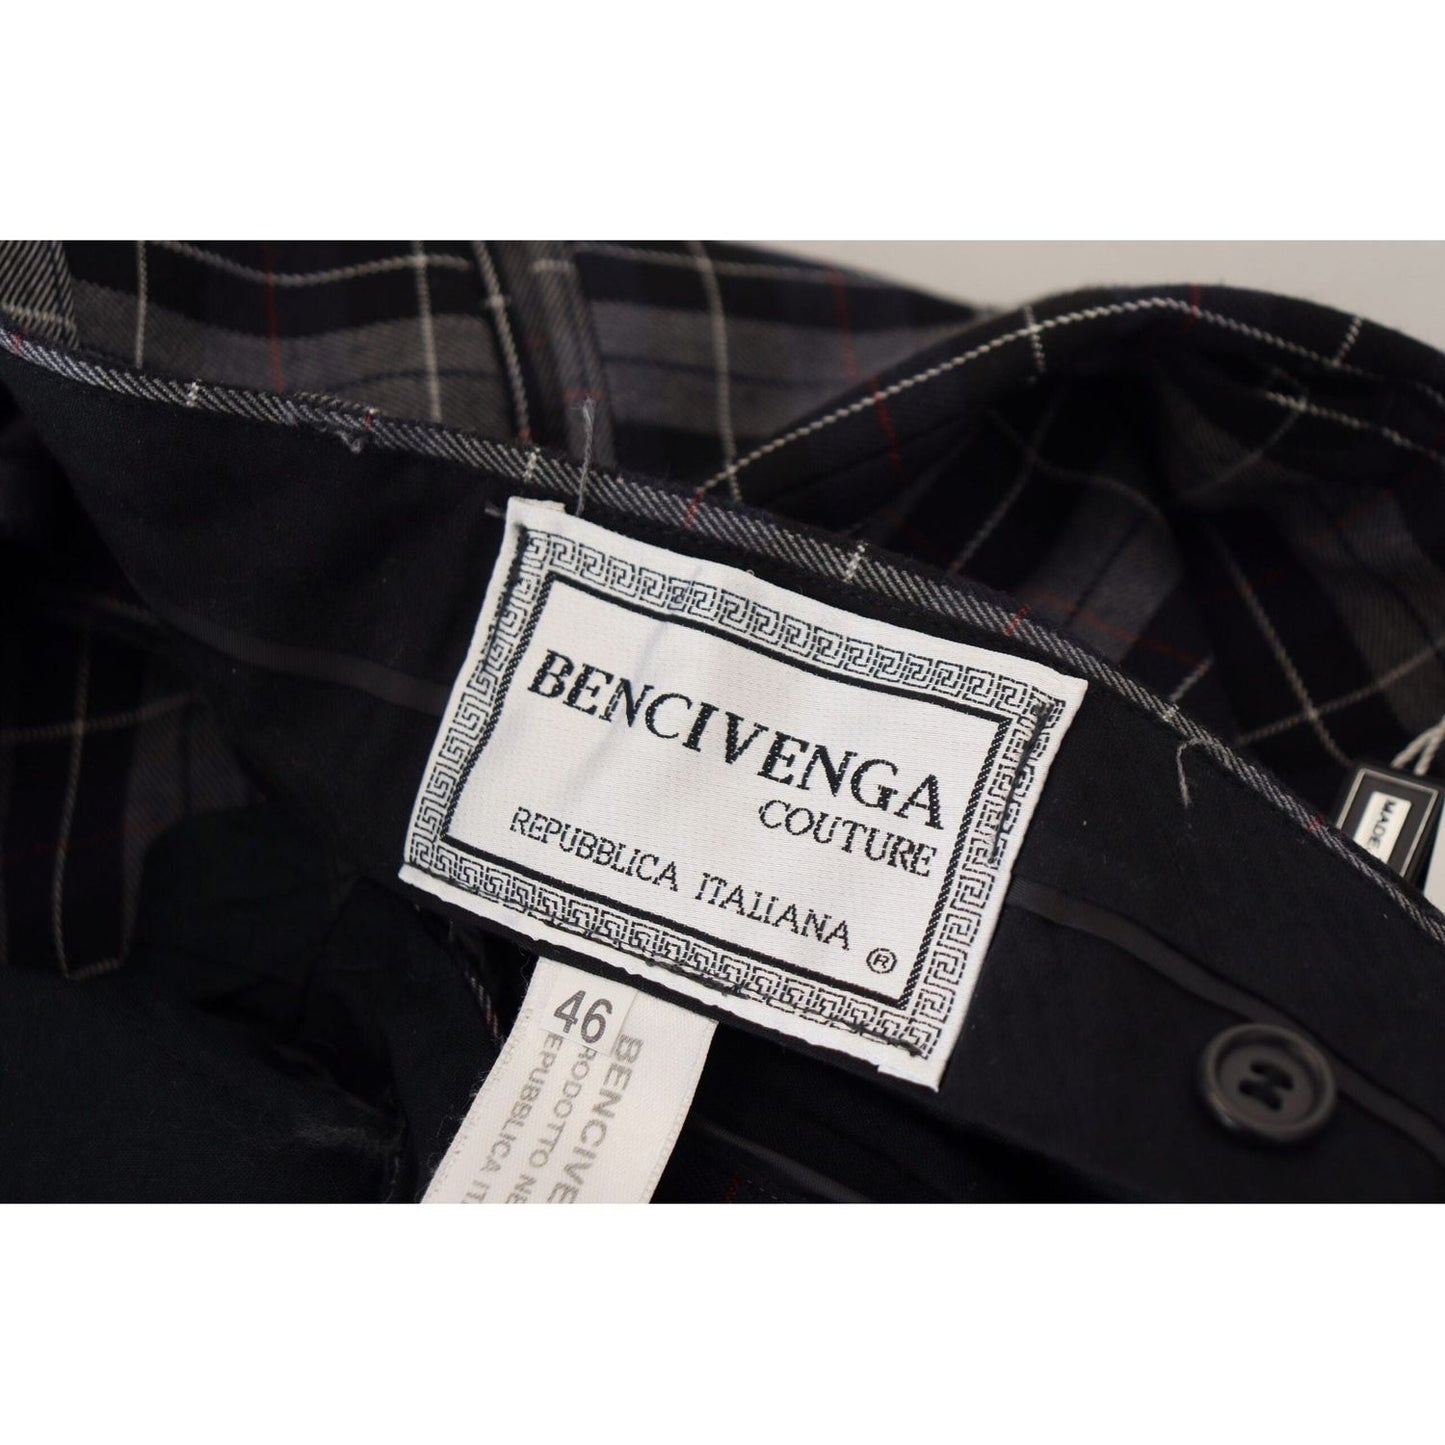 BENCIVENGAElegant Gray Checkered Wool Chino PantsMcRichard Designer Brands£119.00